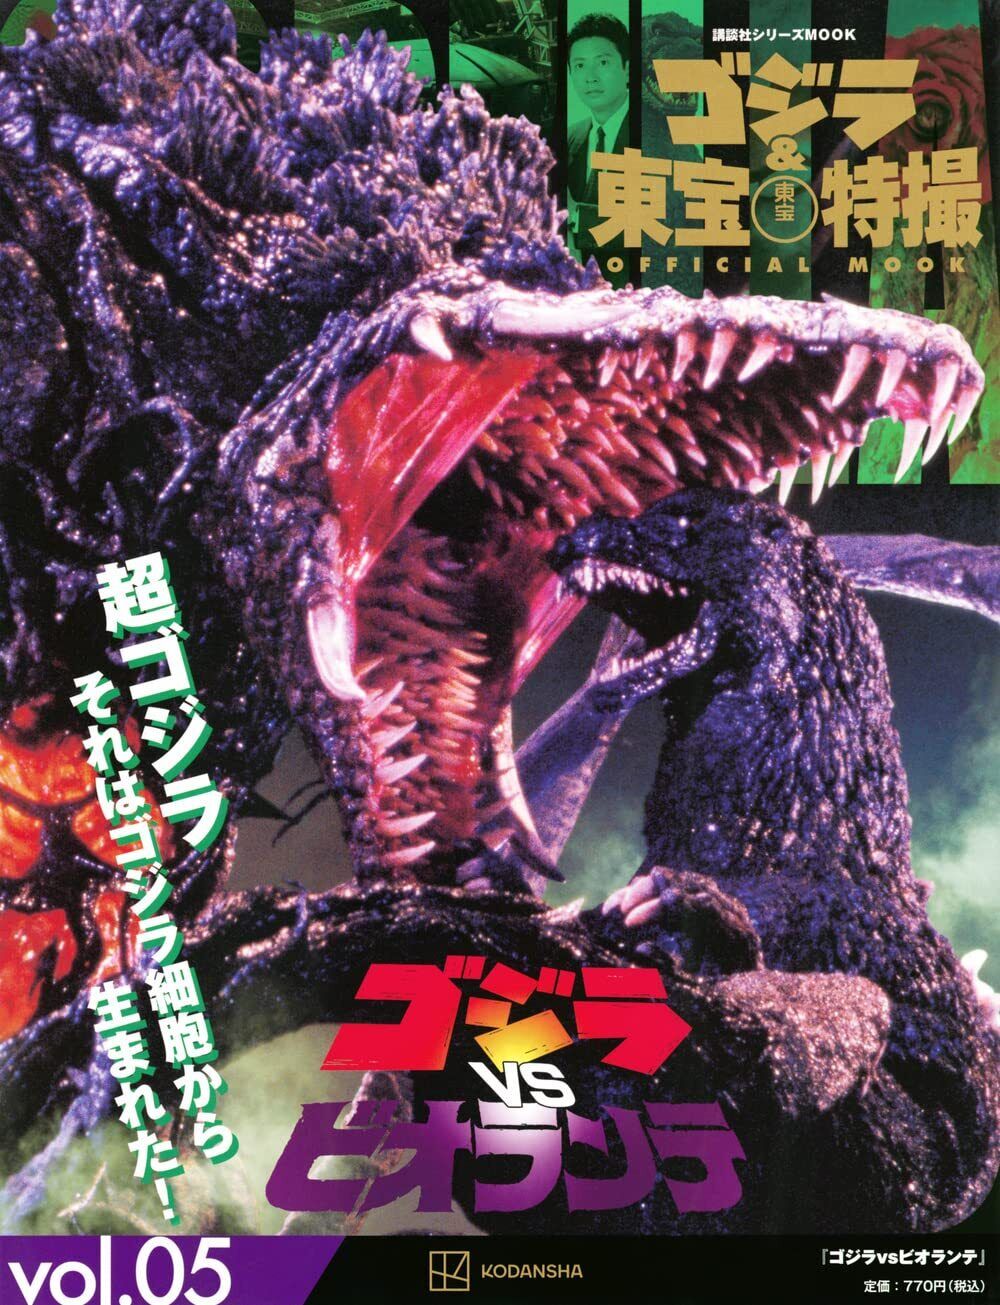 Godzilla Toho Tokusatsu PERFECT MOOK vol.5 Biollante book kaiju New